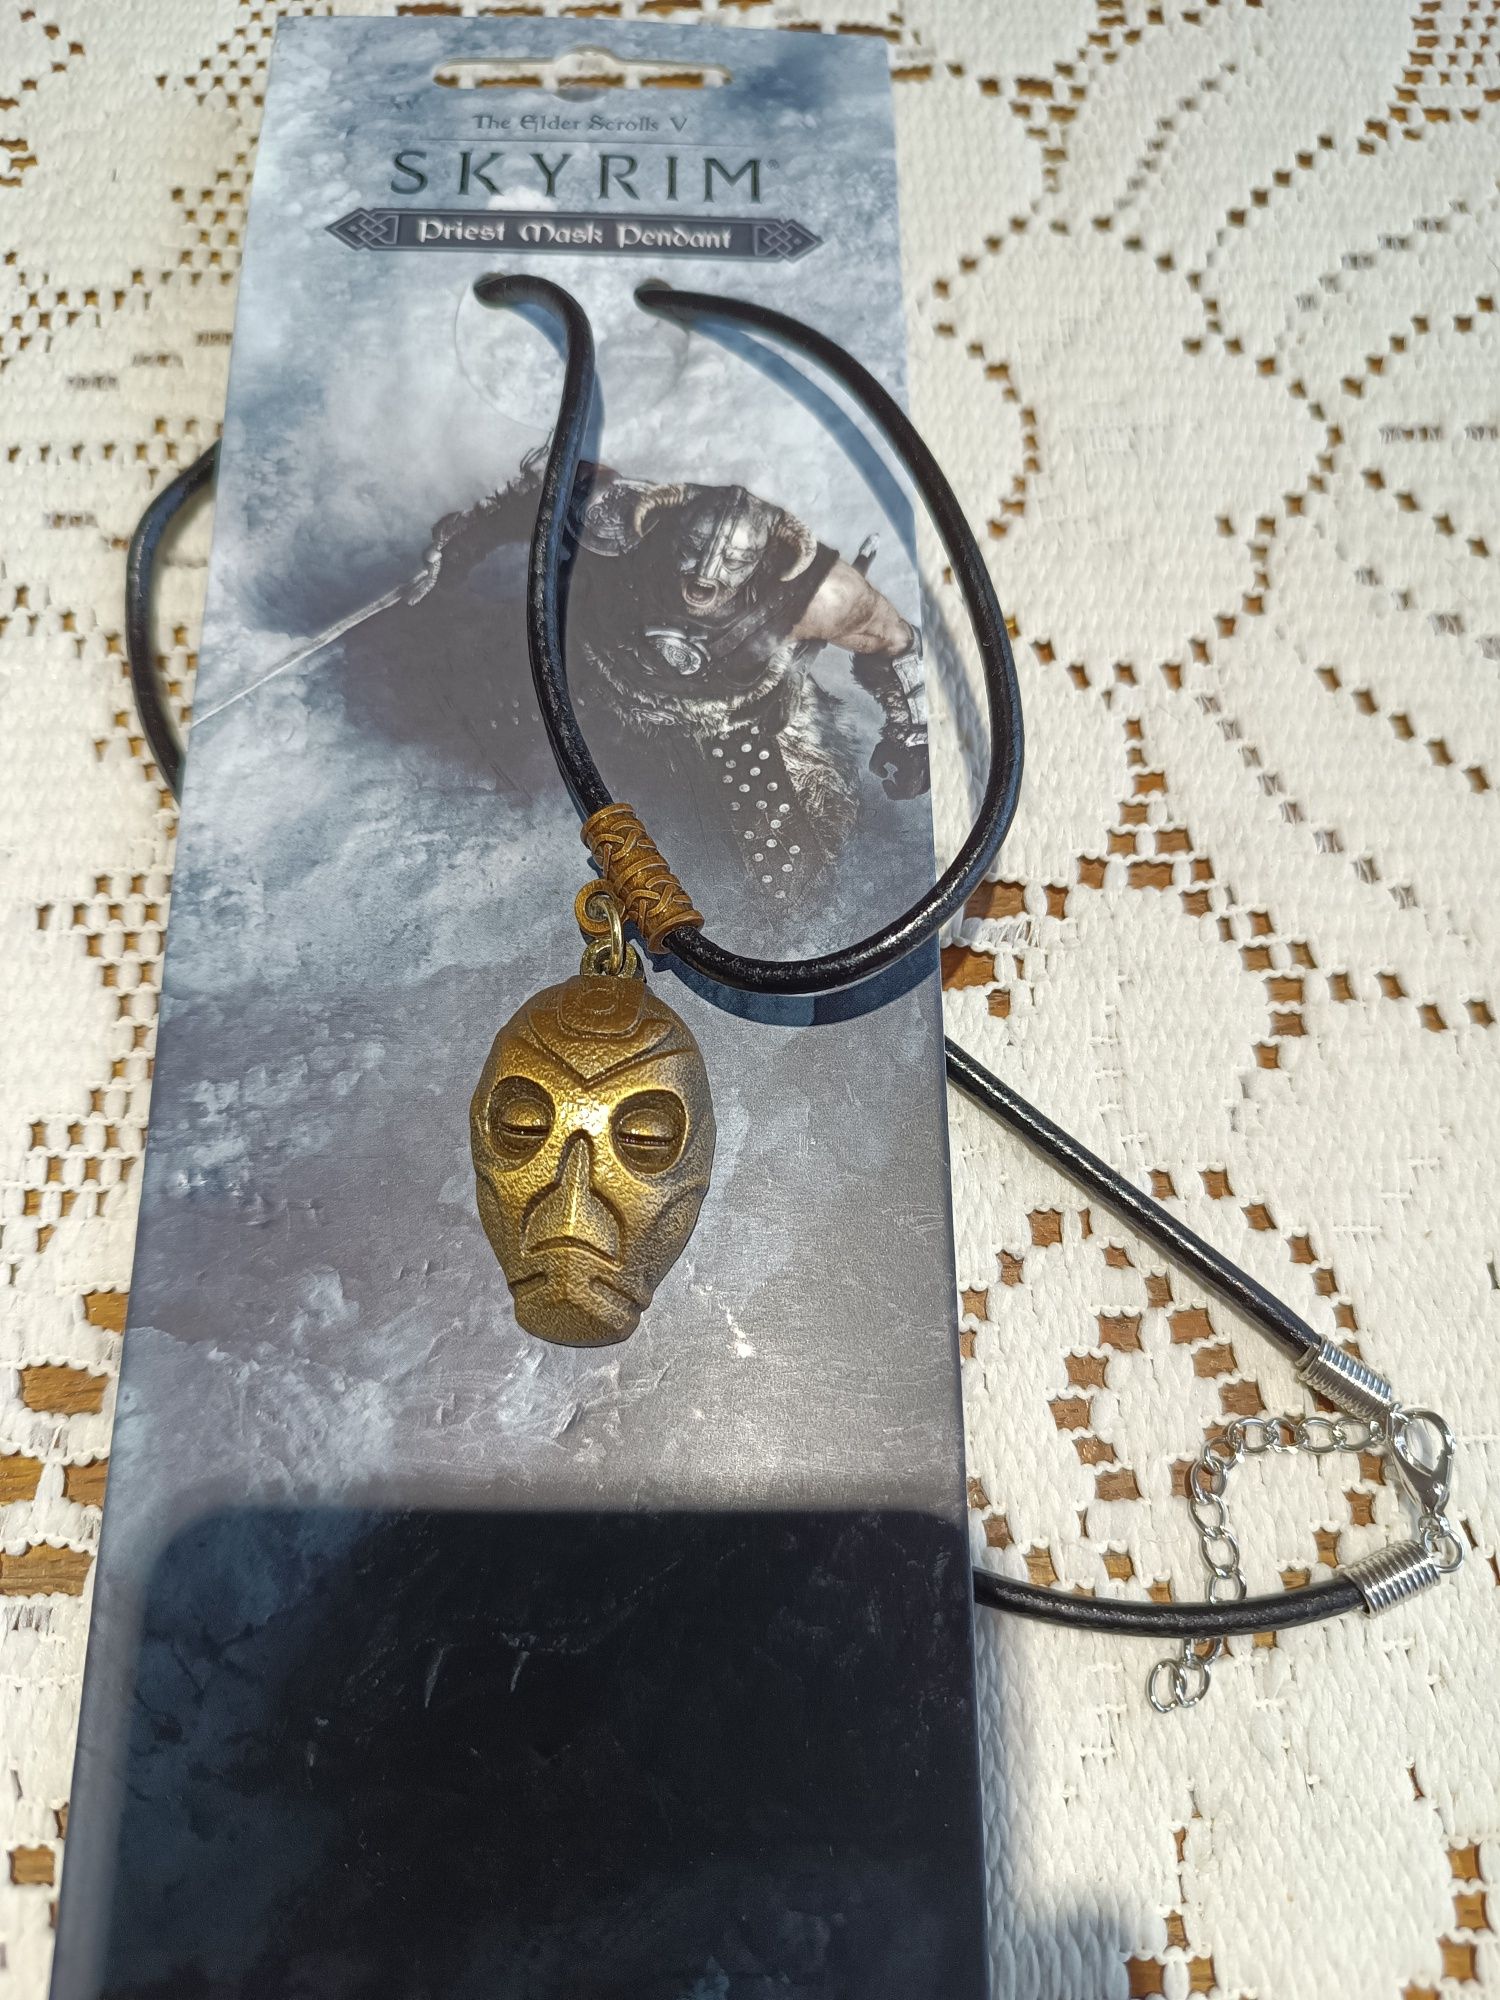 Theo Elder Scrolls V Skyrim Priest Maska Naszyjnik z wisiorkiem

Maska